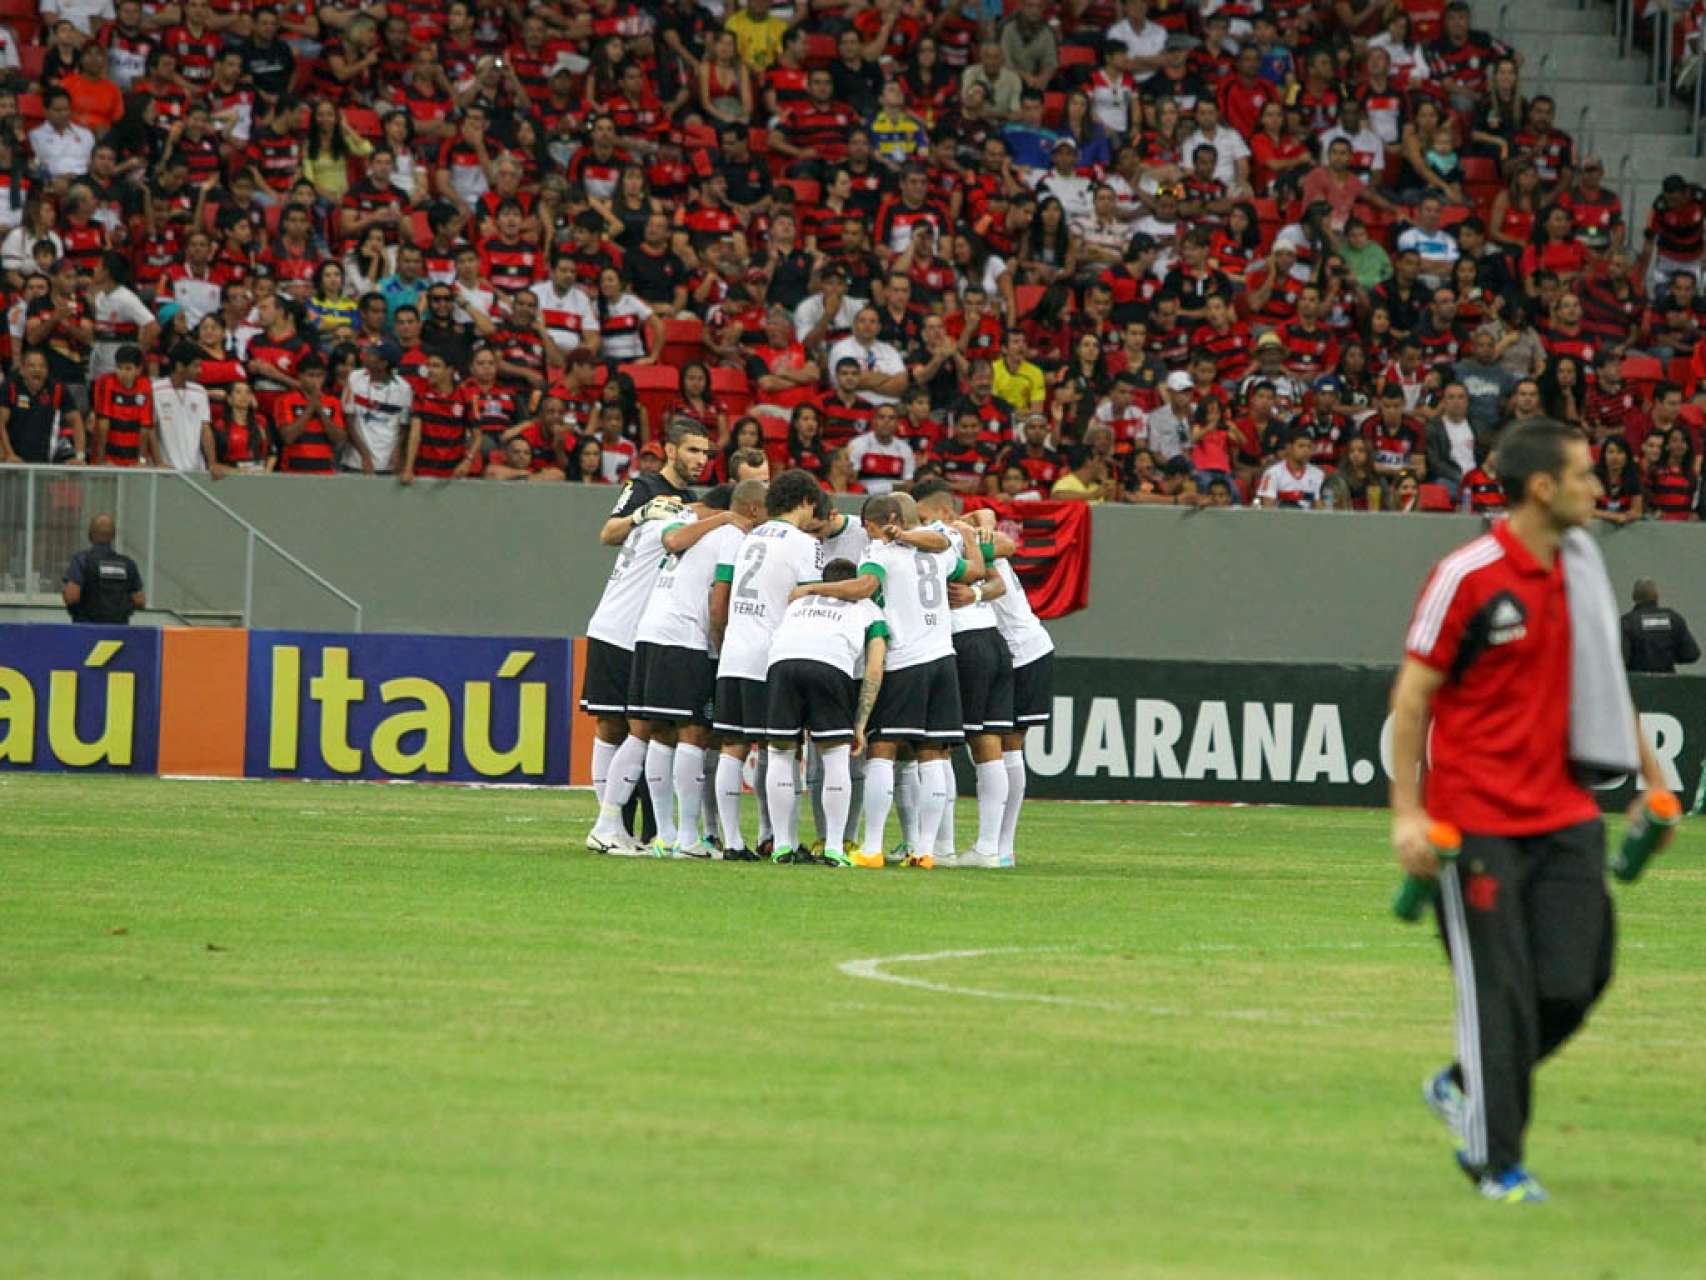 Galeria Coxa: Flamengo 22 Coritiba